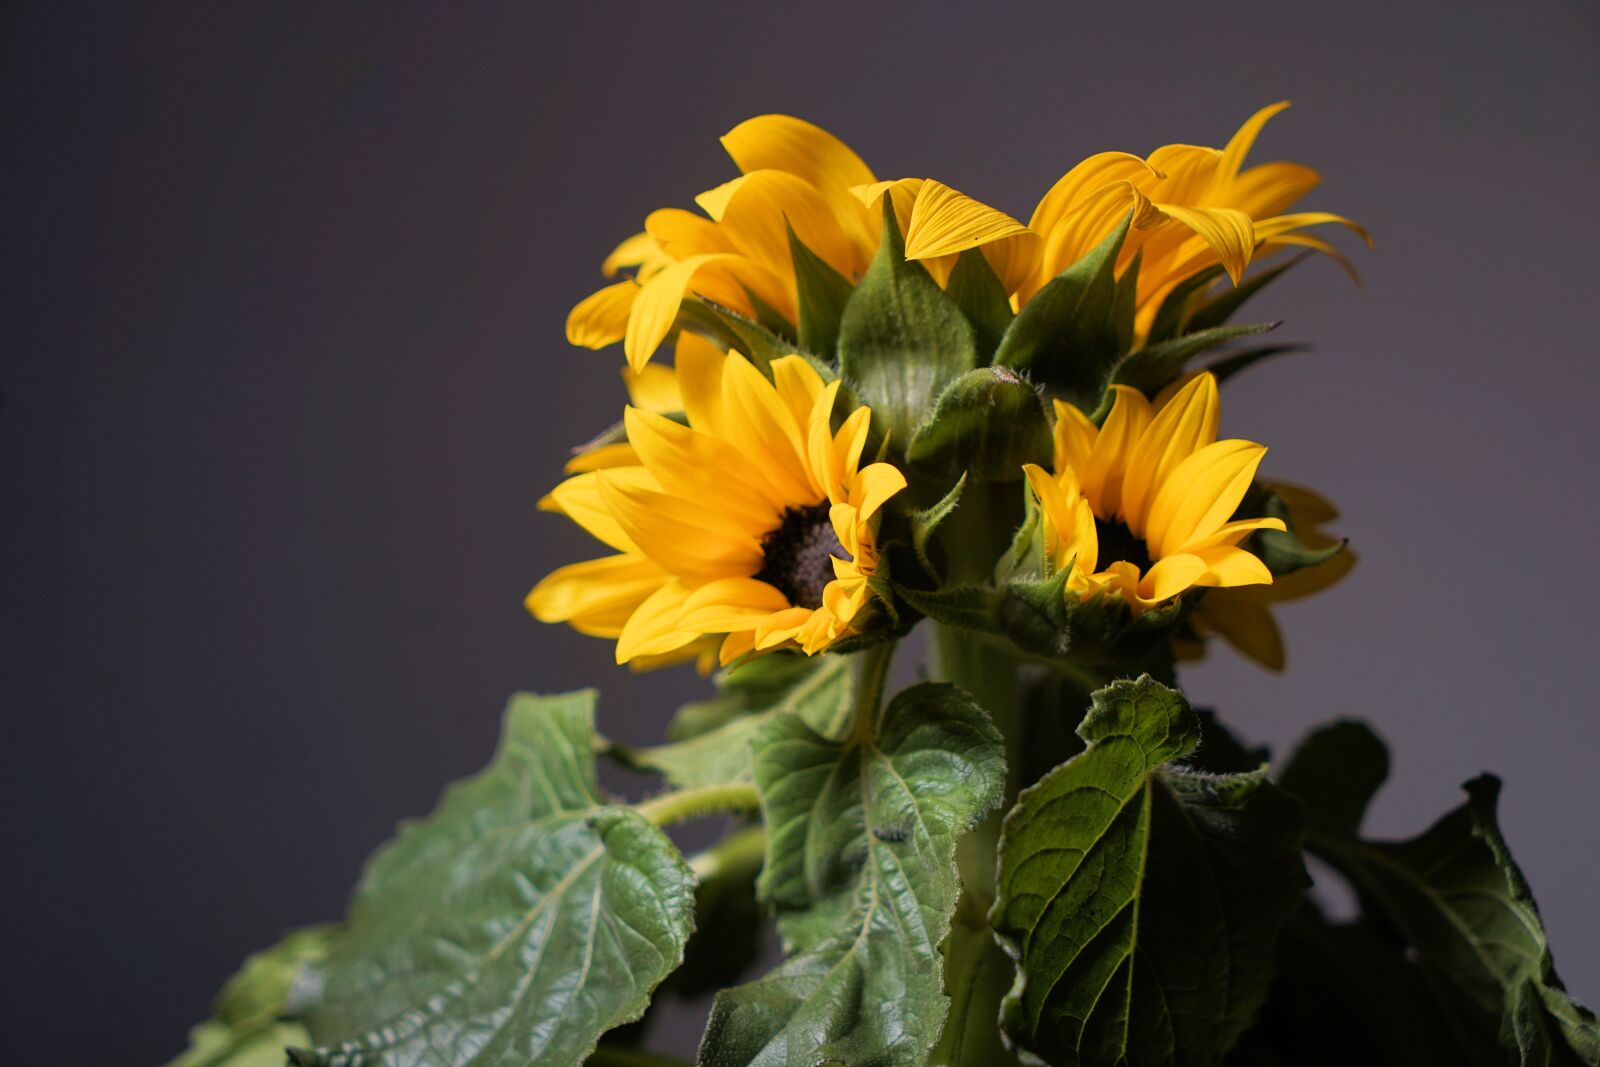 Sony Vario Tessar T* FE 24-70mm F4 ZA OSS sample photo. Sunflower, flower, blossom photography